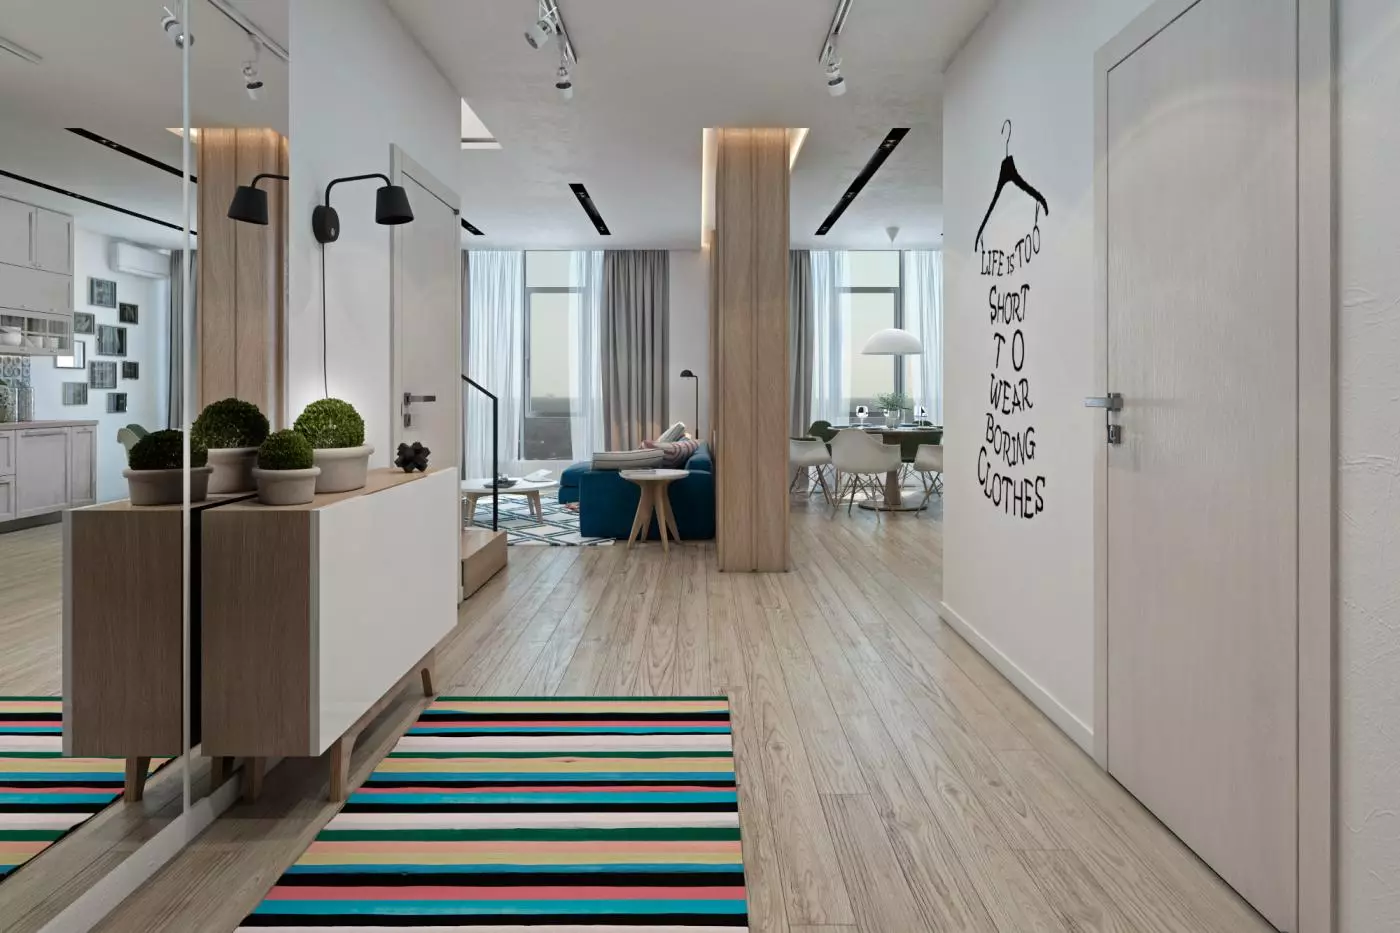 Hallway-vardagsrum (78 bilder): Design vardagsrum kombinerat med en korridor i ett privat hus och en lägenhet, hallens layout, kombinerat med korridoren till ett rum 9096_52